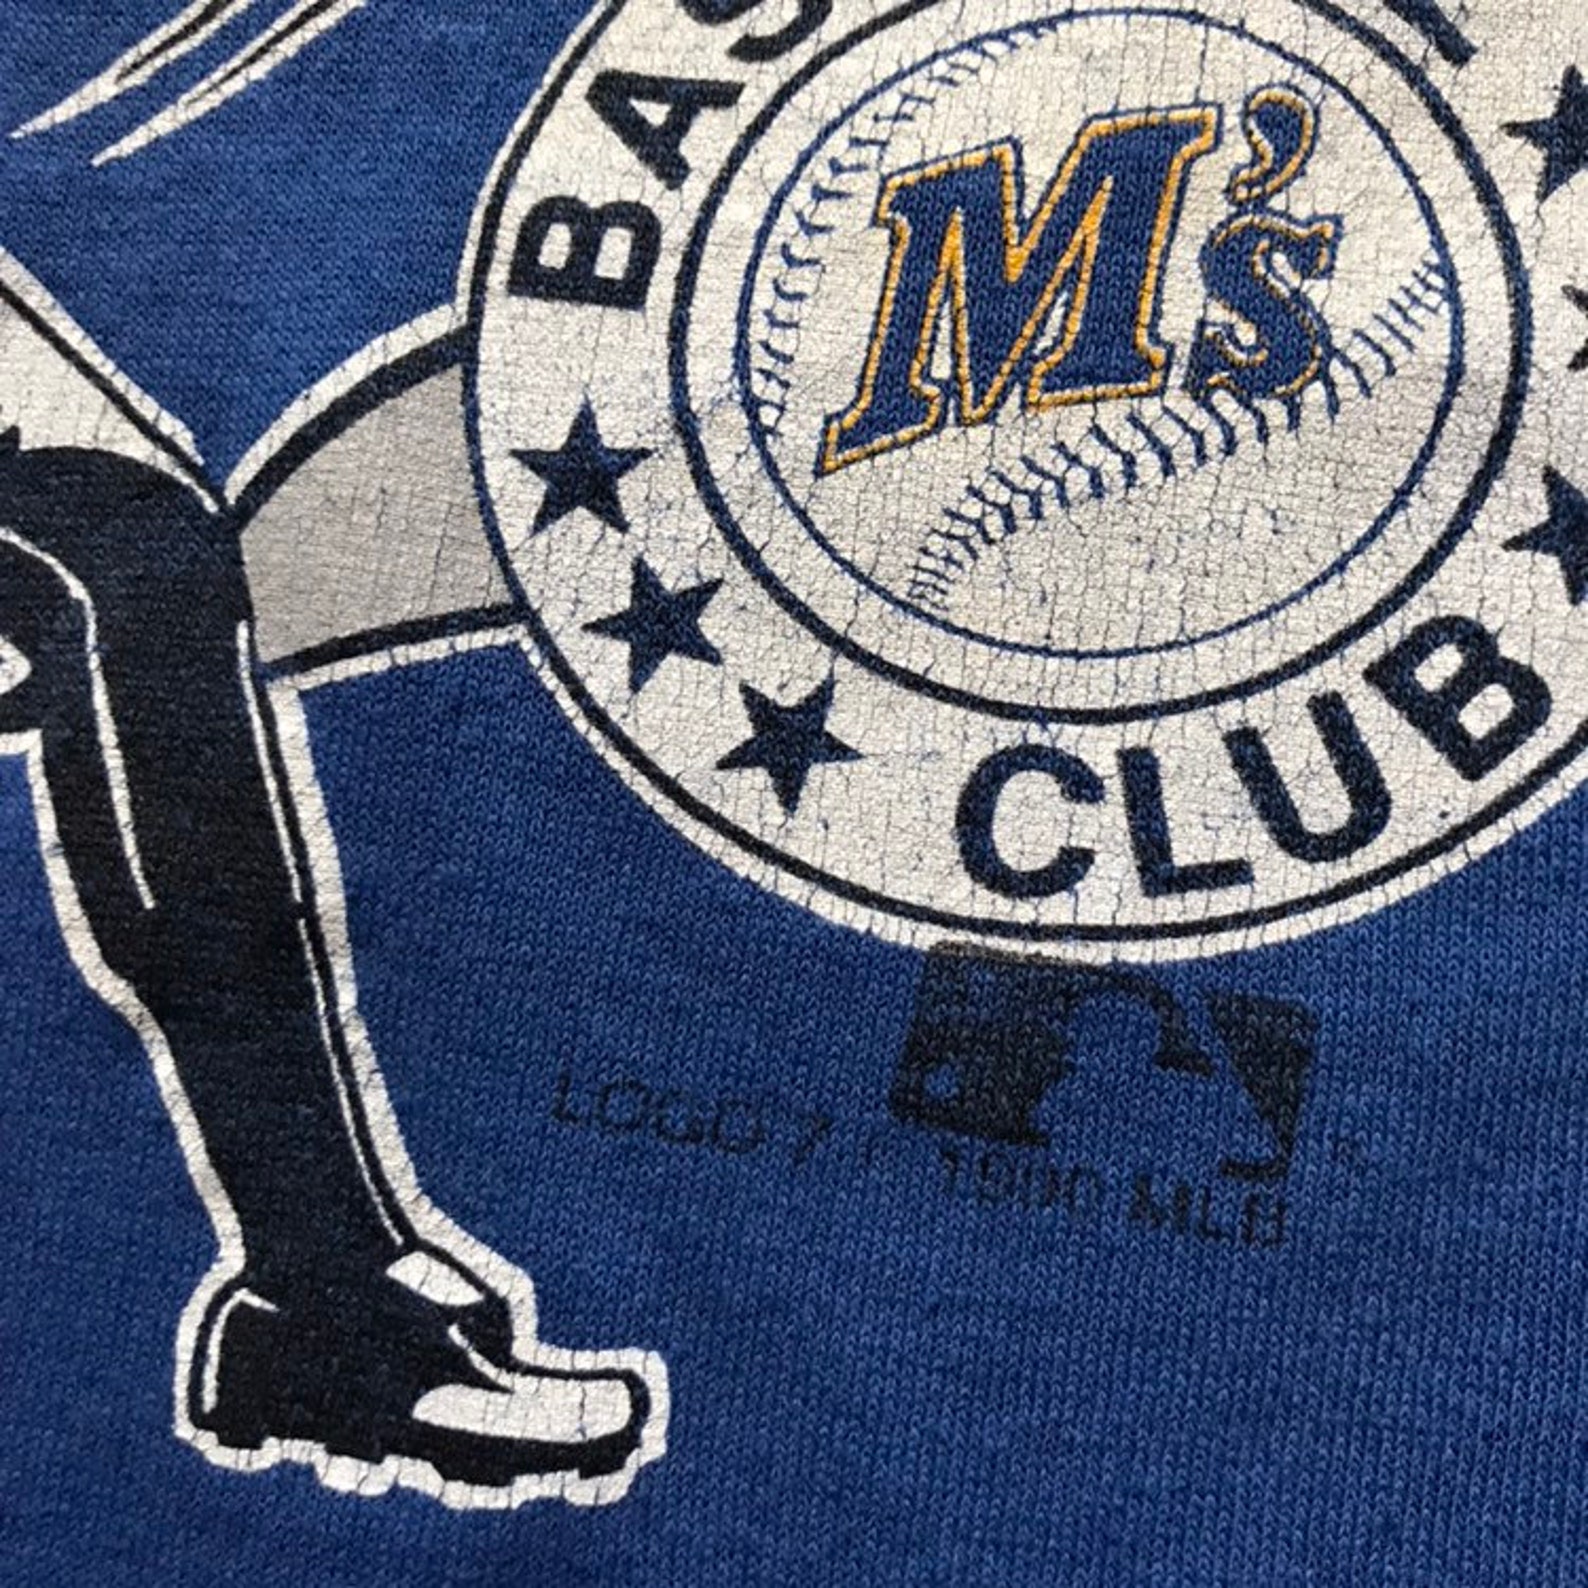 1990 Seattle Mariners T Shirt Large 90s Clothing MLB | Etsy